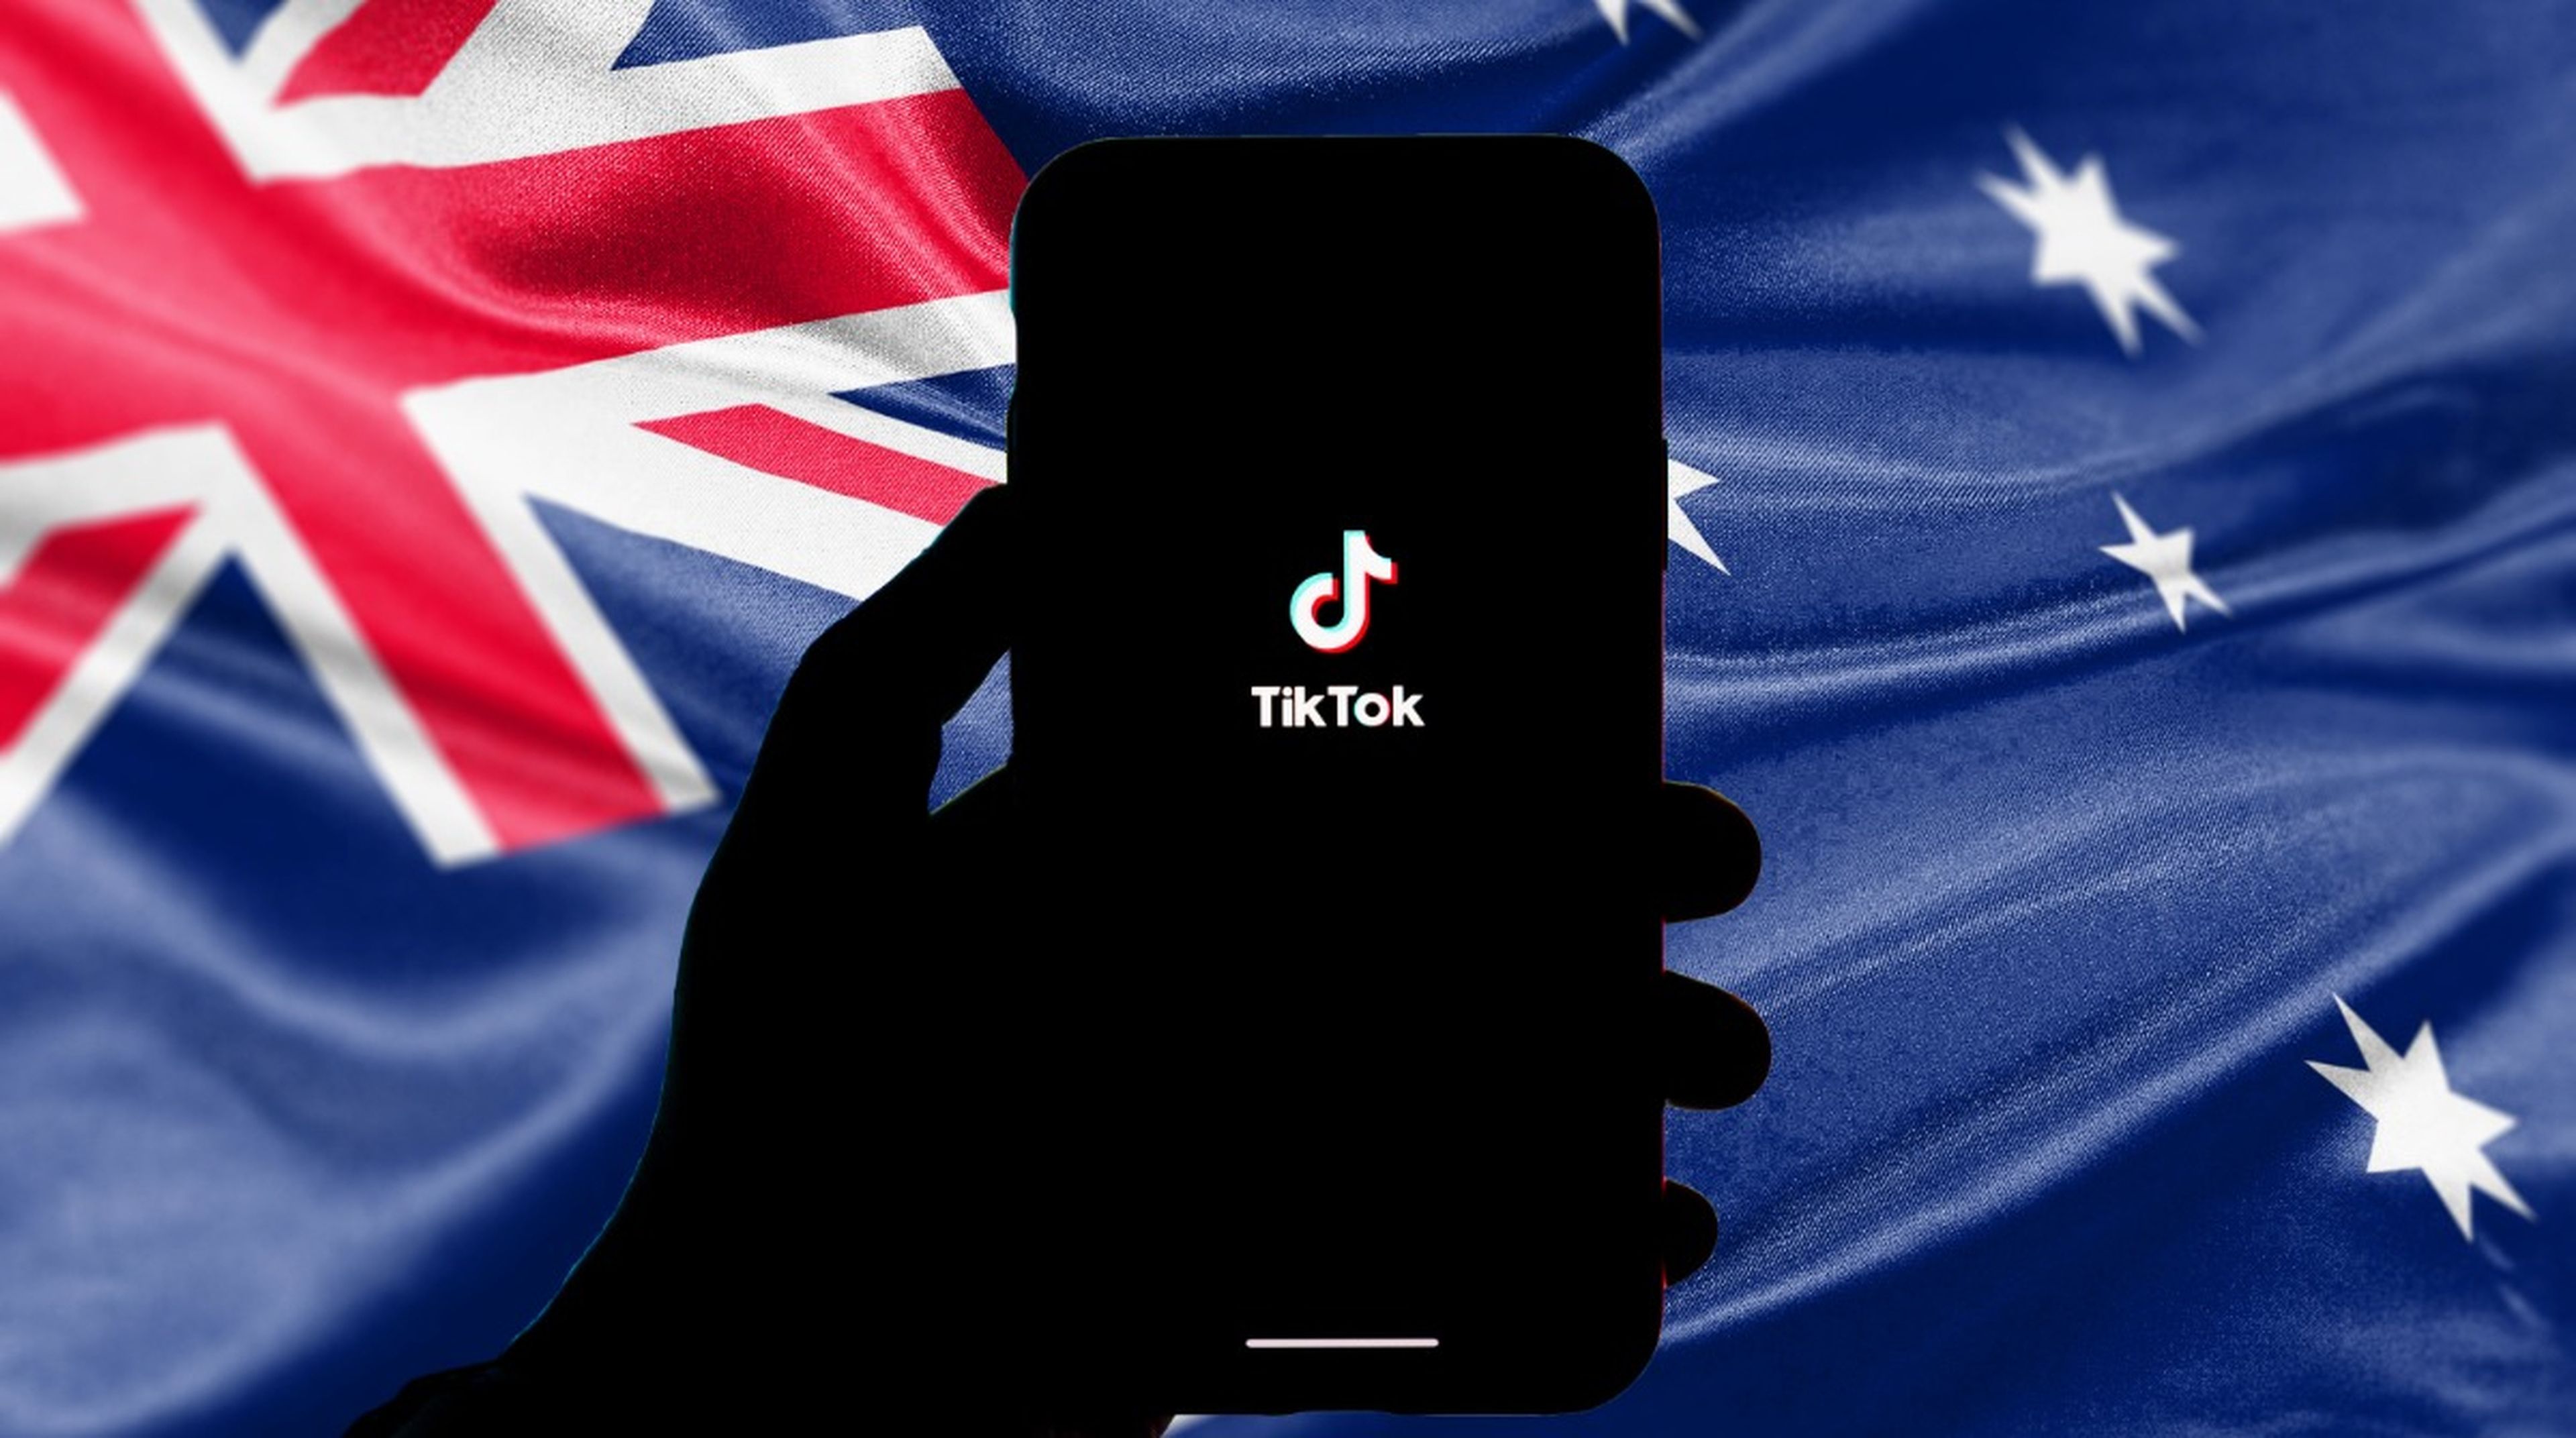 Un nuevo país se une al veto de TikTok en los dispositivos gubernamentales